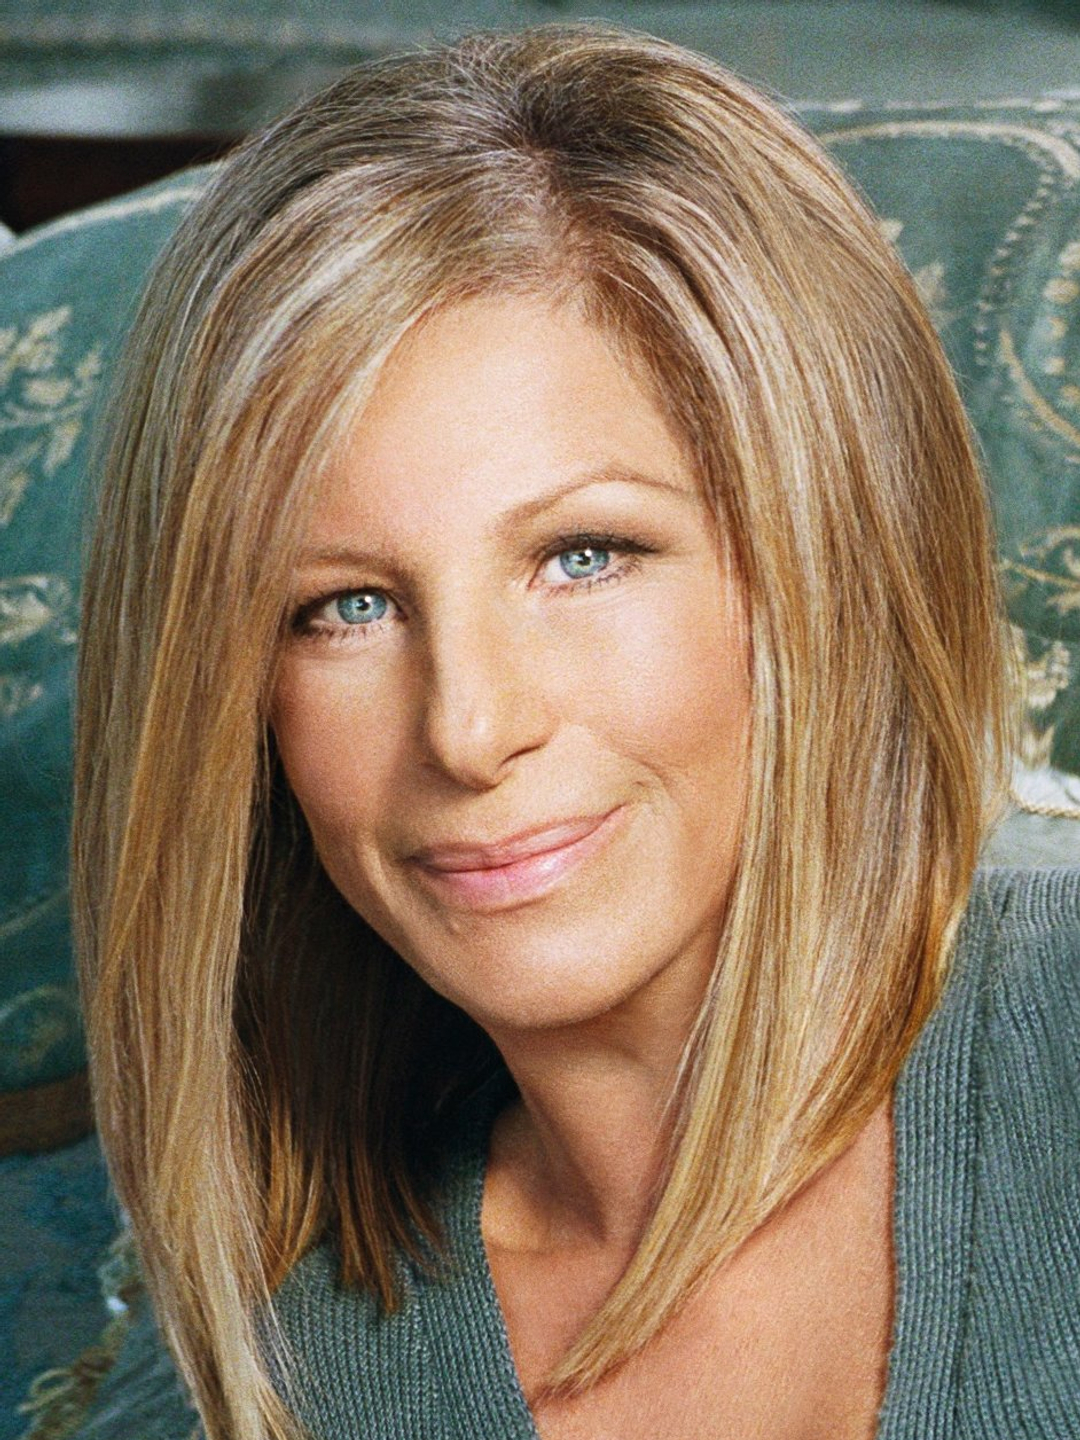 Barbra Streisand dating history